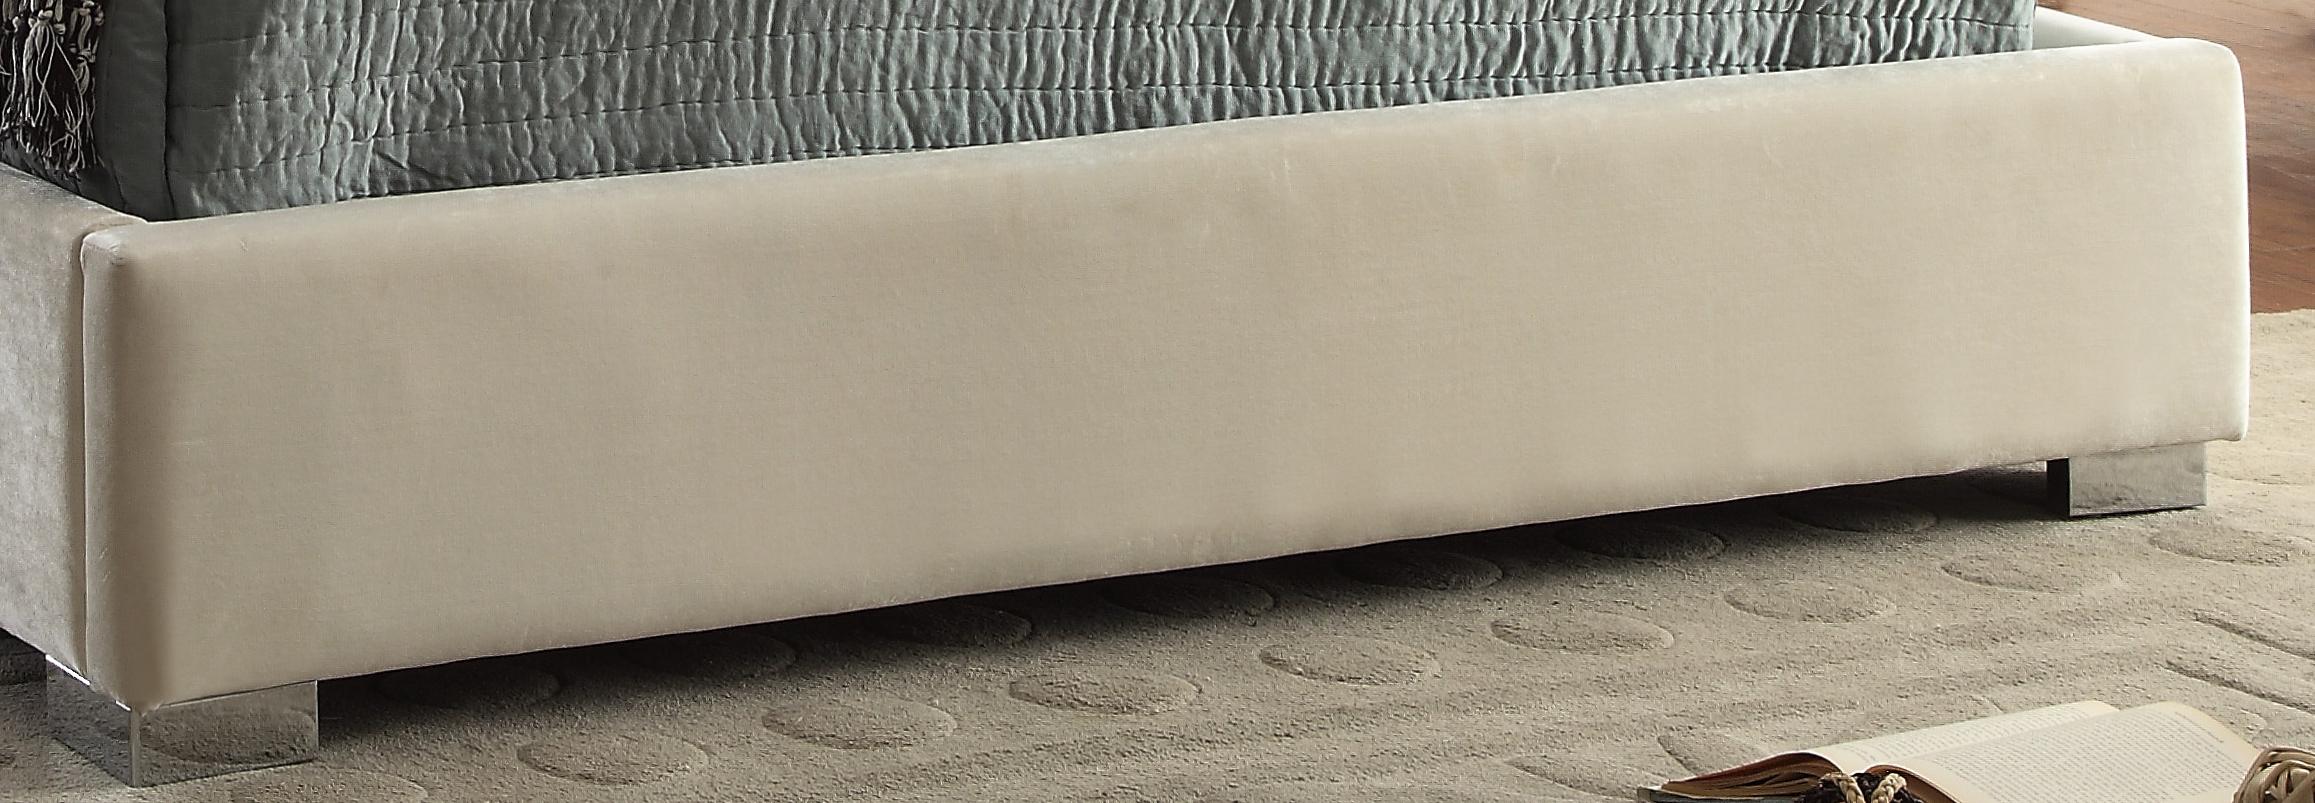 

    
MadisonCream-K-Bed Meridian Furniture Platform Bed
